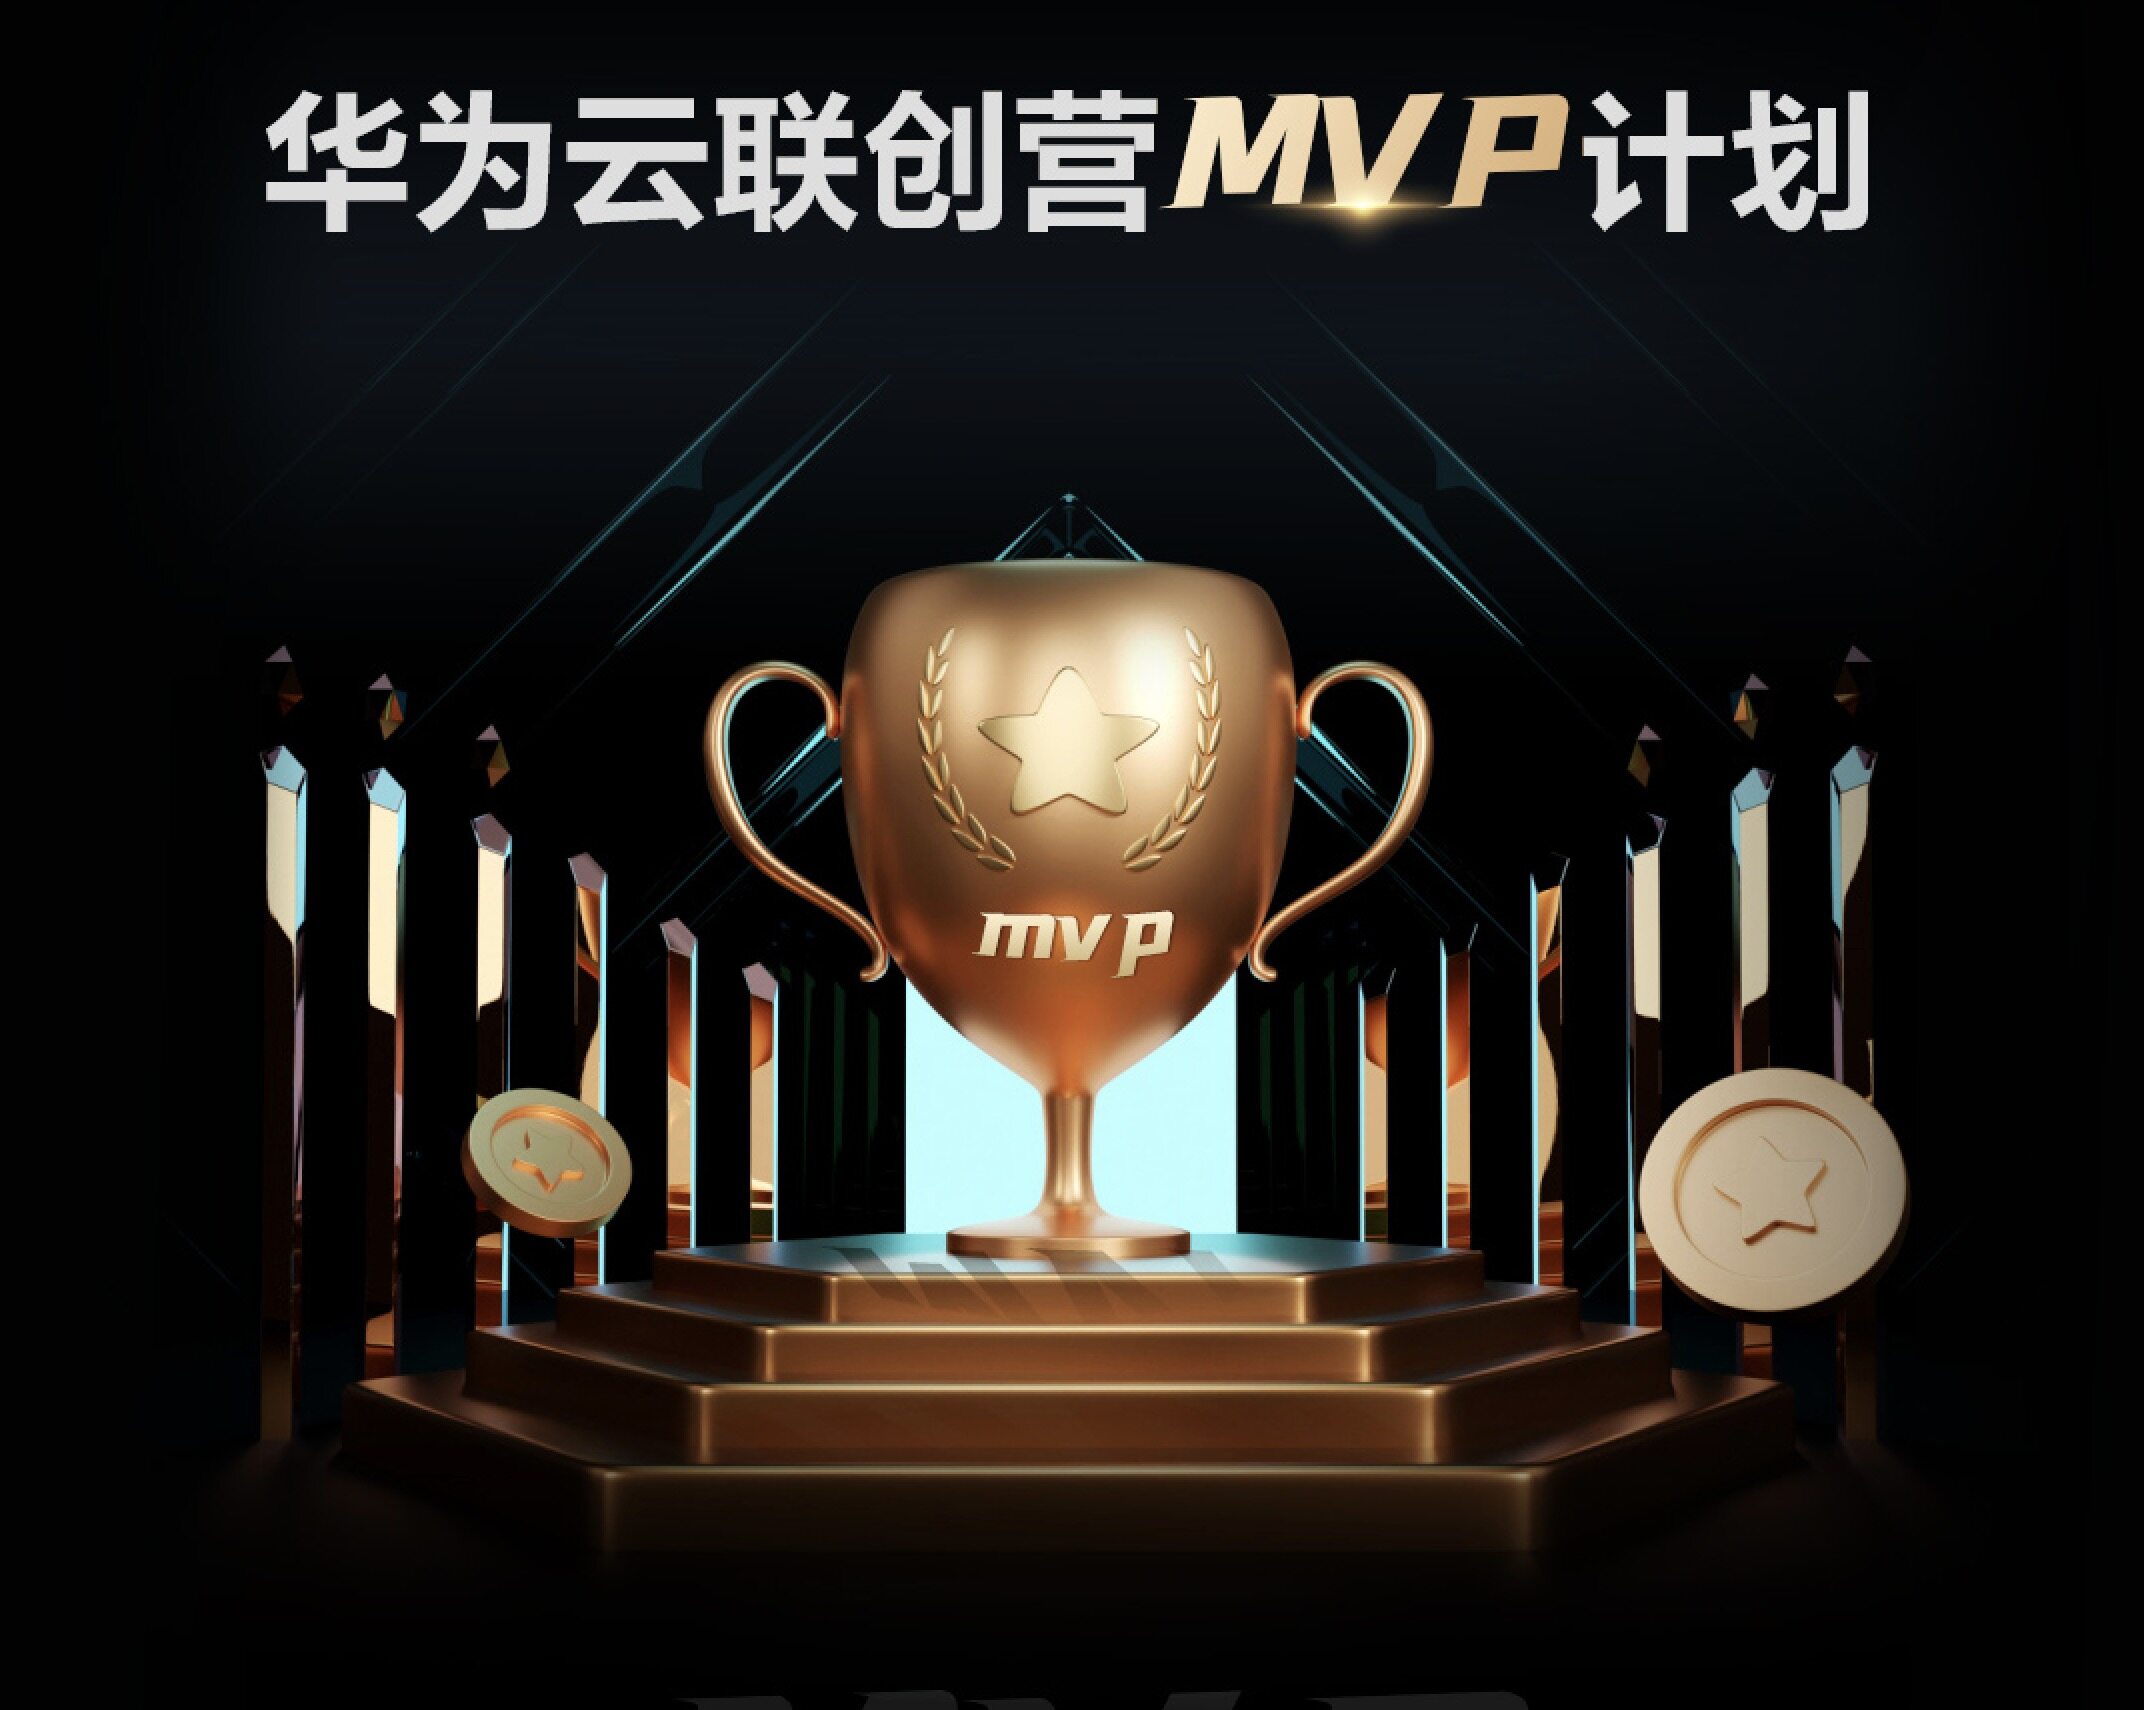 寻找“数字化创变者”，极客邦科技&华为云联创营重磅发布MVP计划！